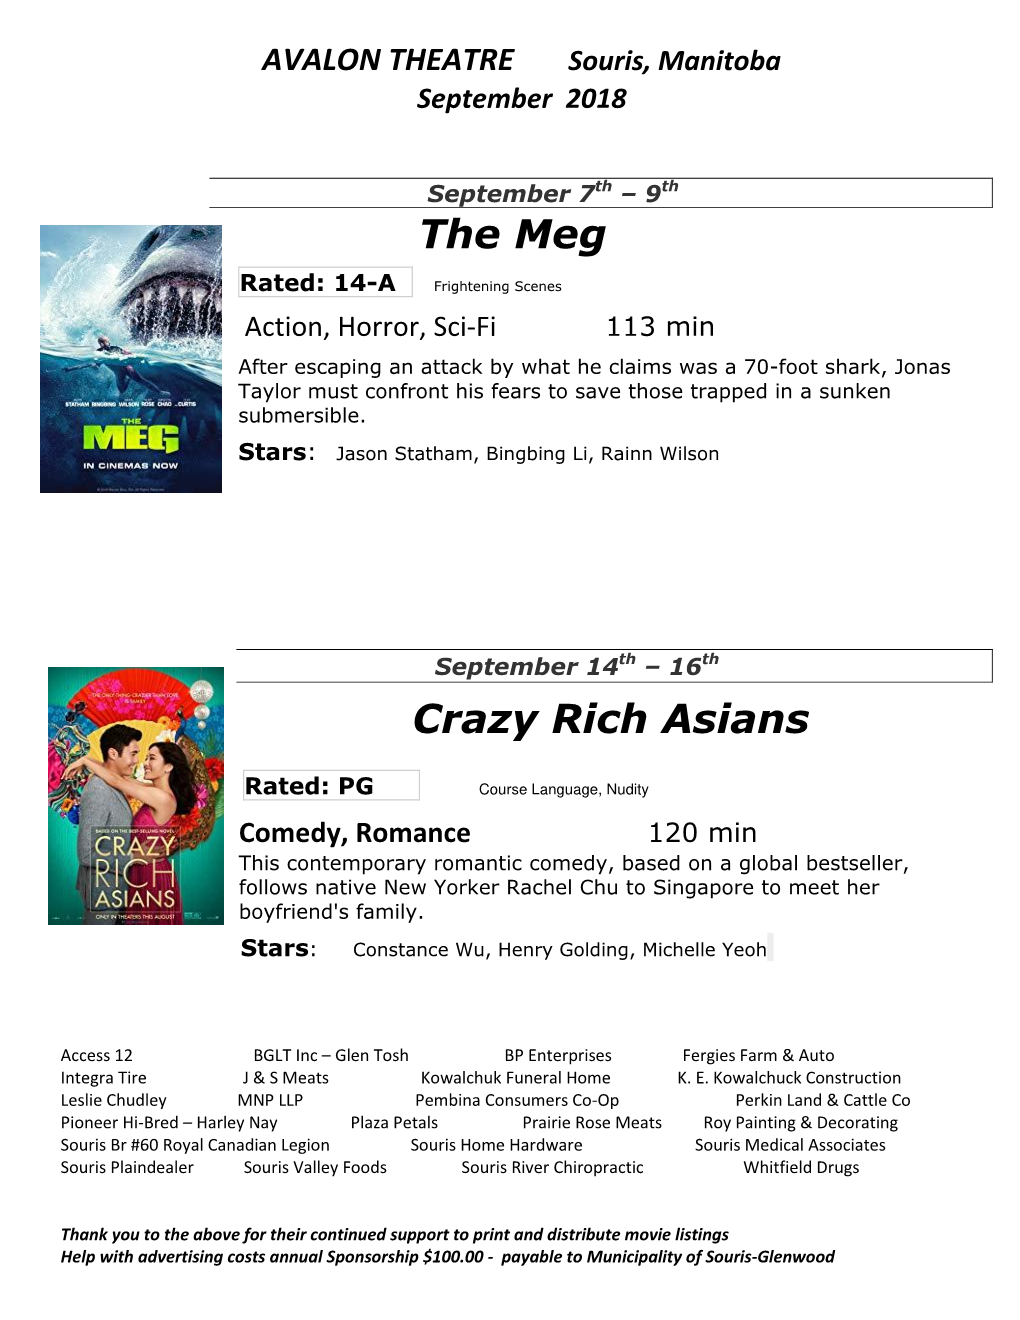 The Meg Crazy Rich Asians